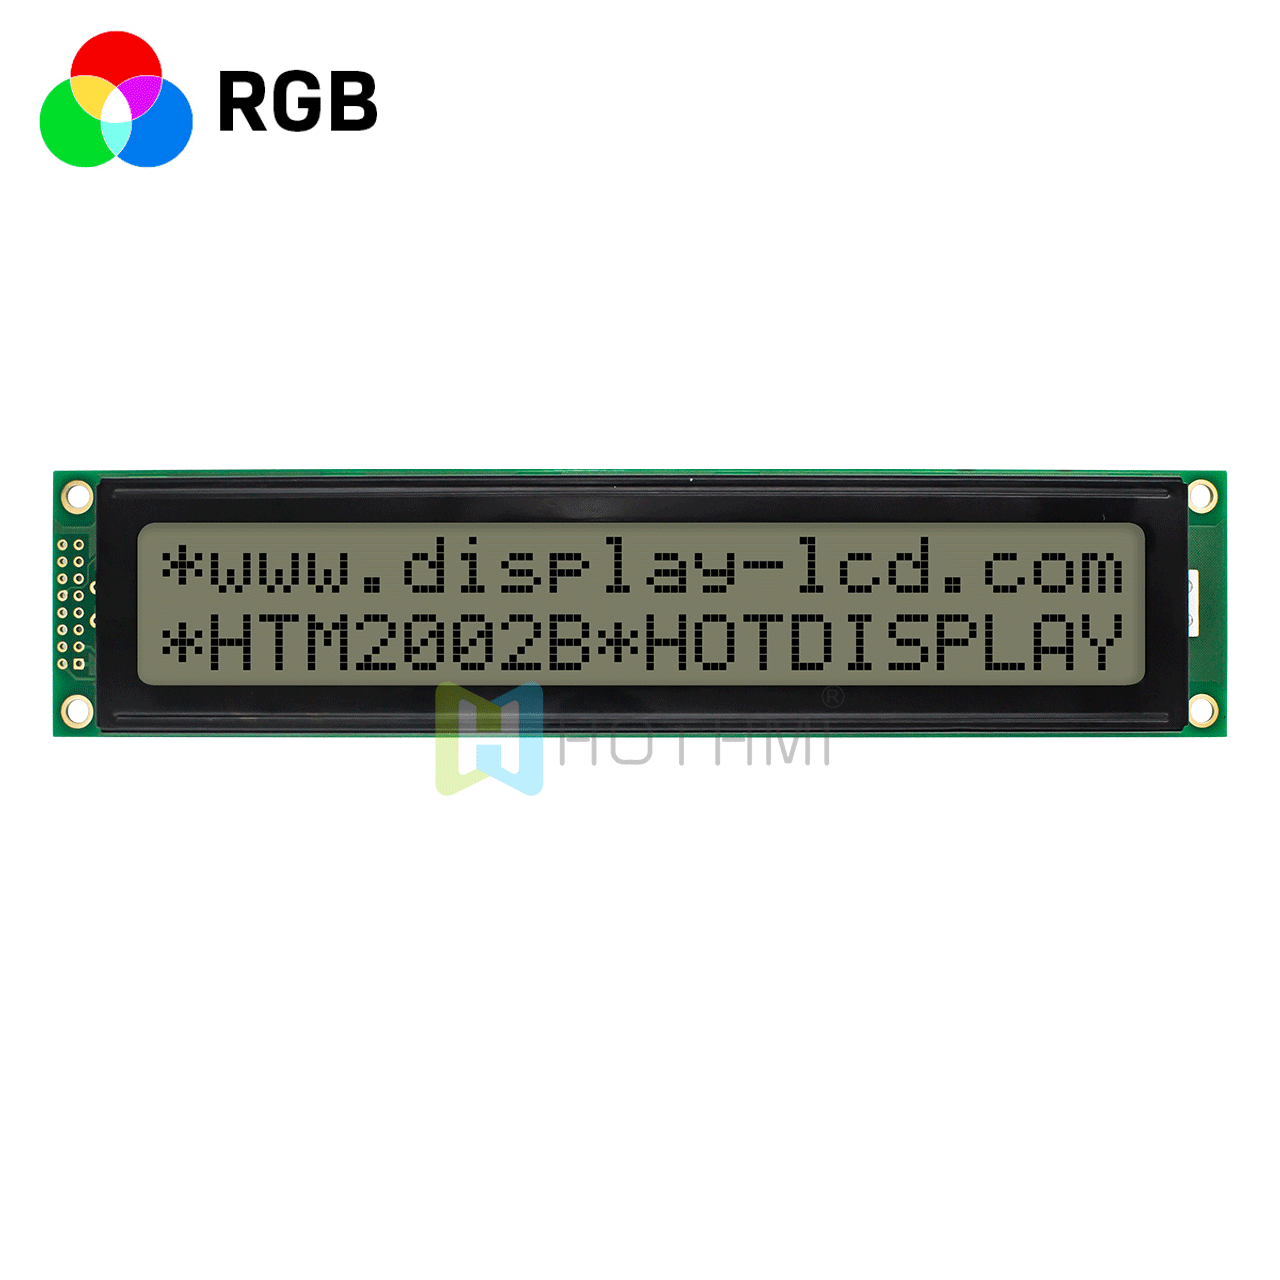 2x20字符显示 | 全透反射式液晶显示器 | RGB LED 背光 | FSTN (+) 正显 | st7066u控制器 | 5.0V